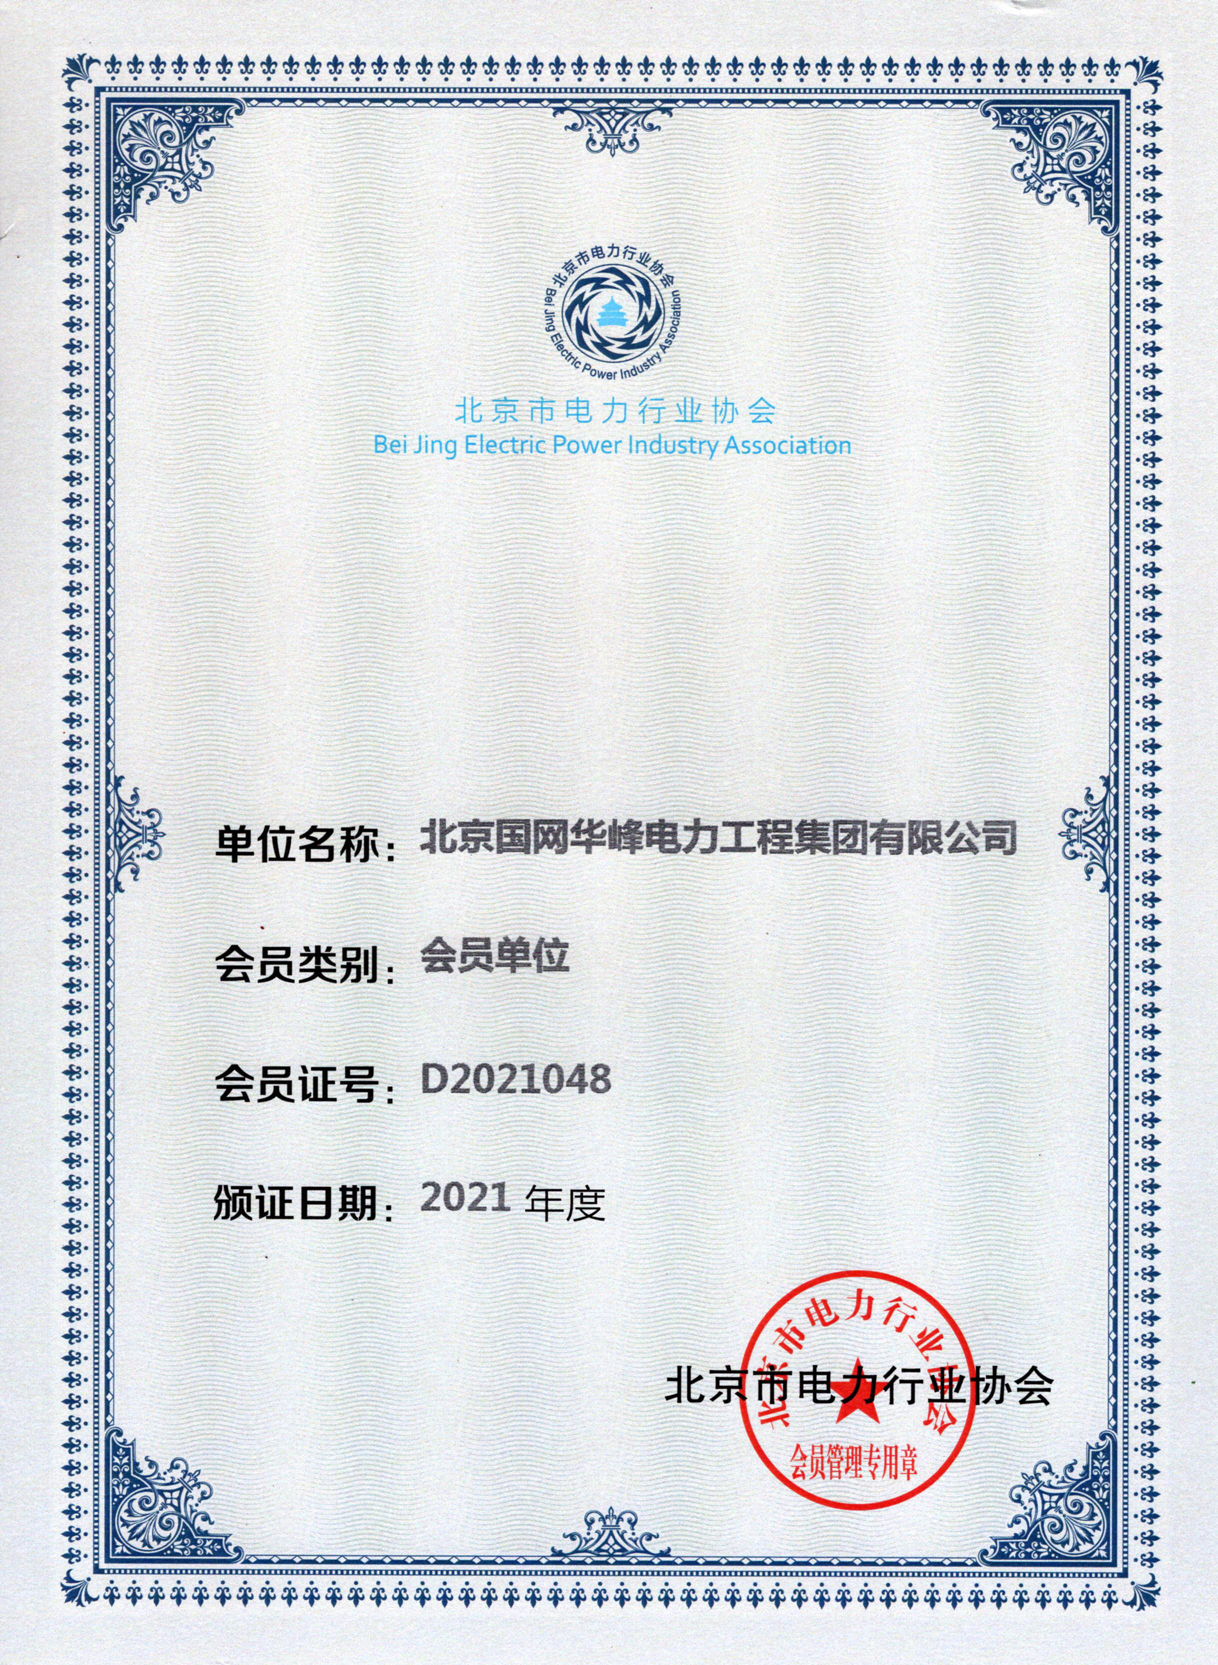 14、北京电力协会2021年度会员.jpg